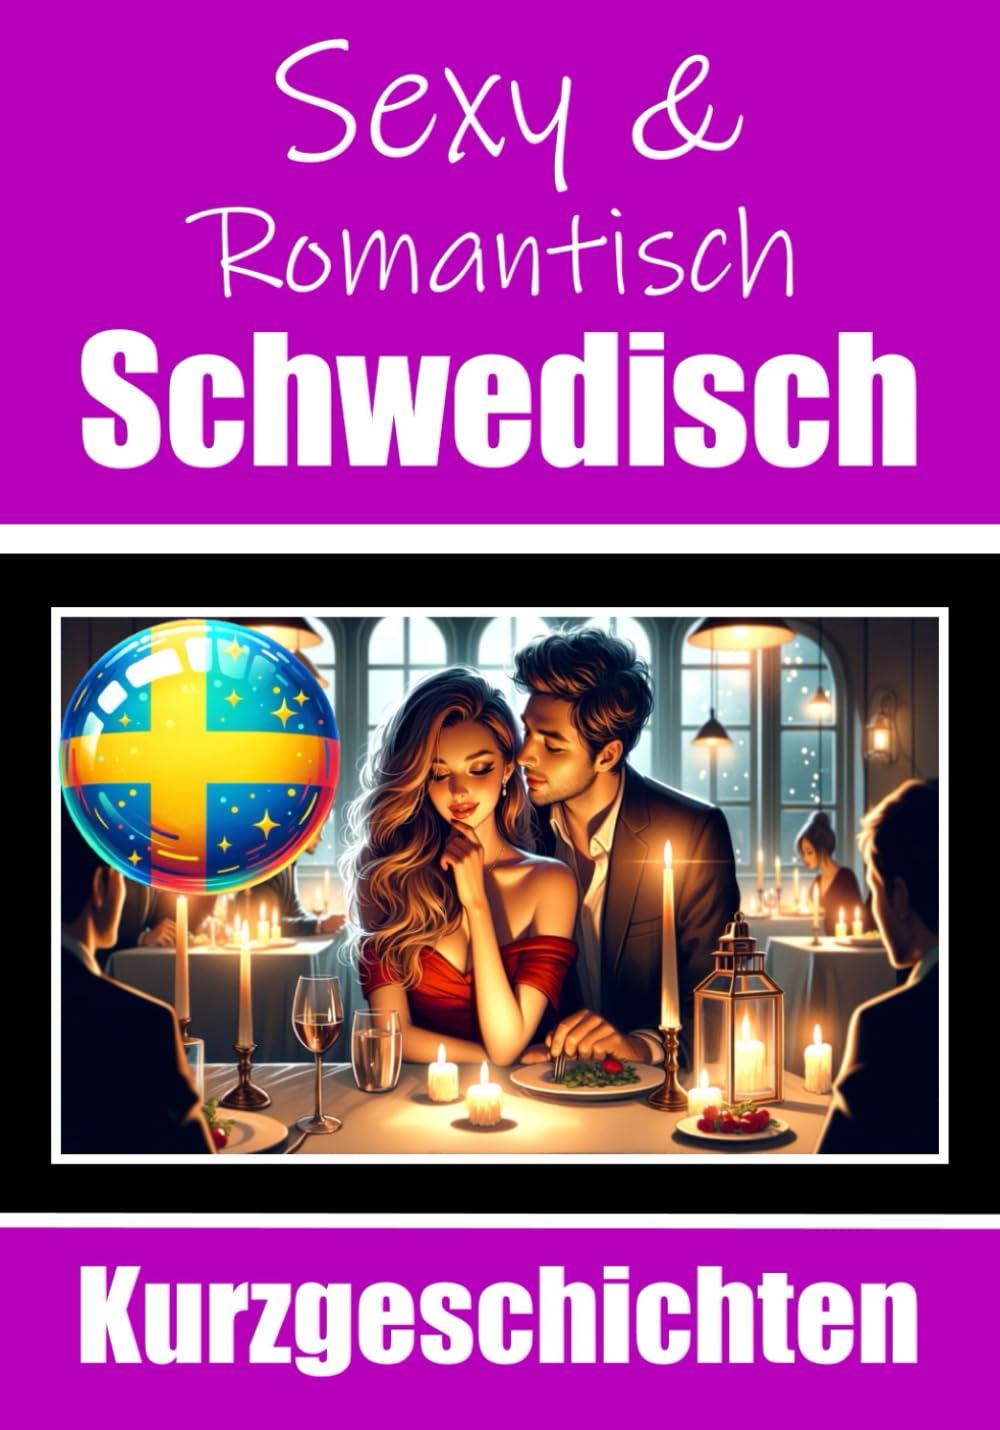 50 Sexy und Romantische Kurzgeschichten auf Schwedisch - Skriuwer.com